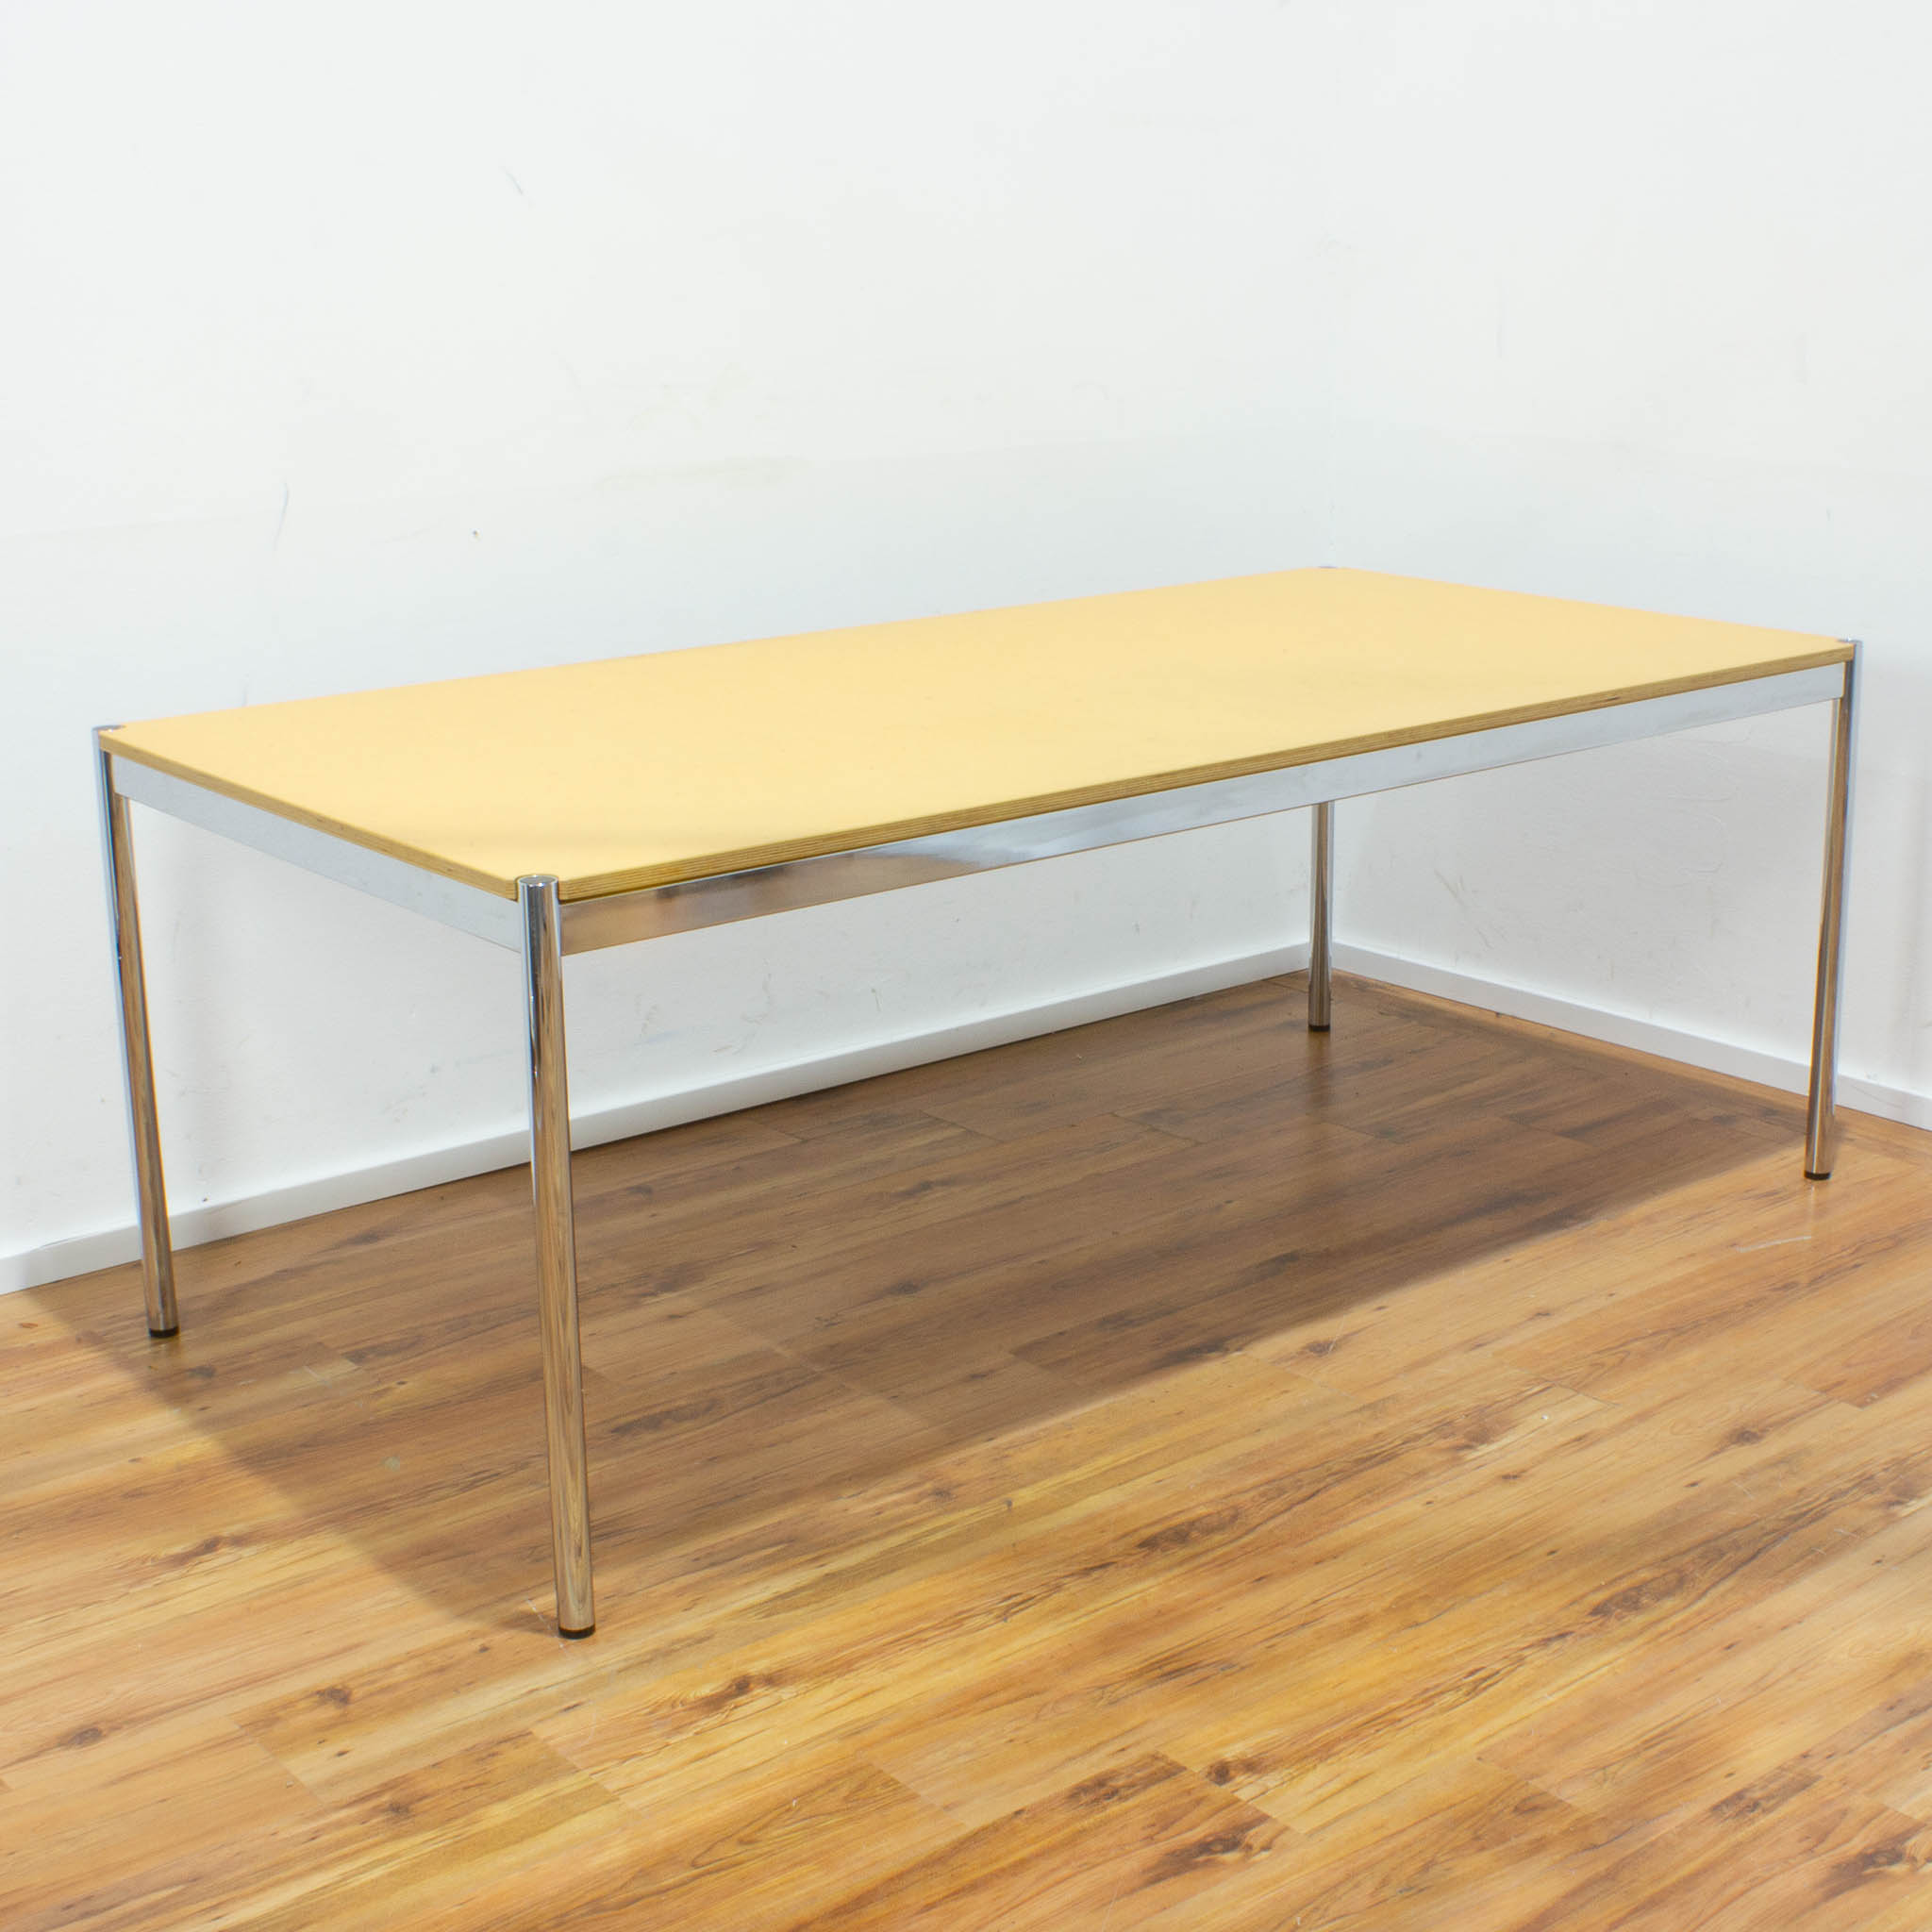 USM Haller Schreibtisch - Tischplatte Linoleum-Optik senf mit Holzkante - gebraucht - 200 x 100 cm 